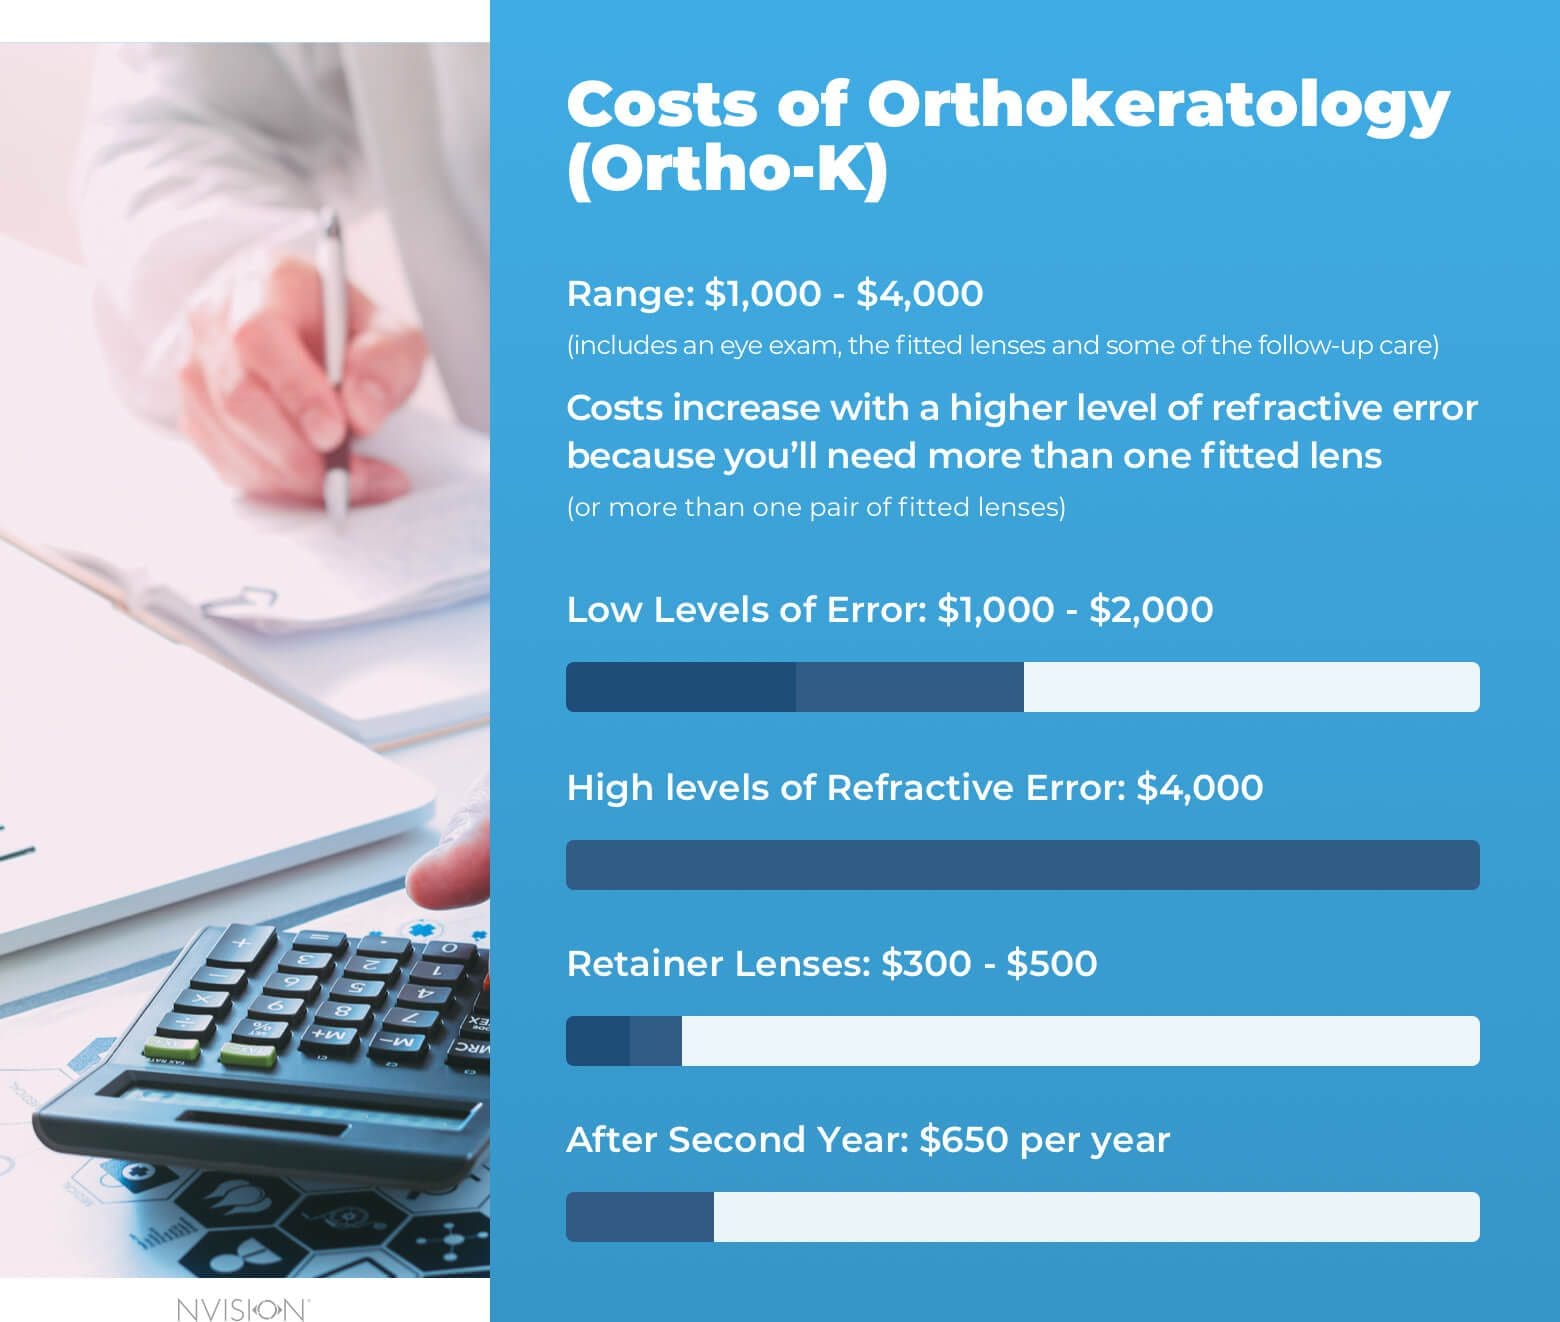 Costs of Orthokeratology (Ortho-K)